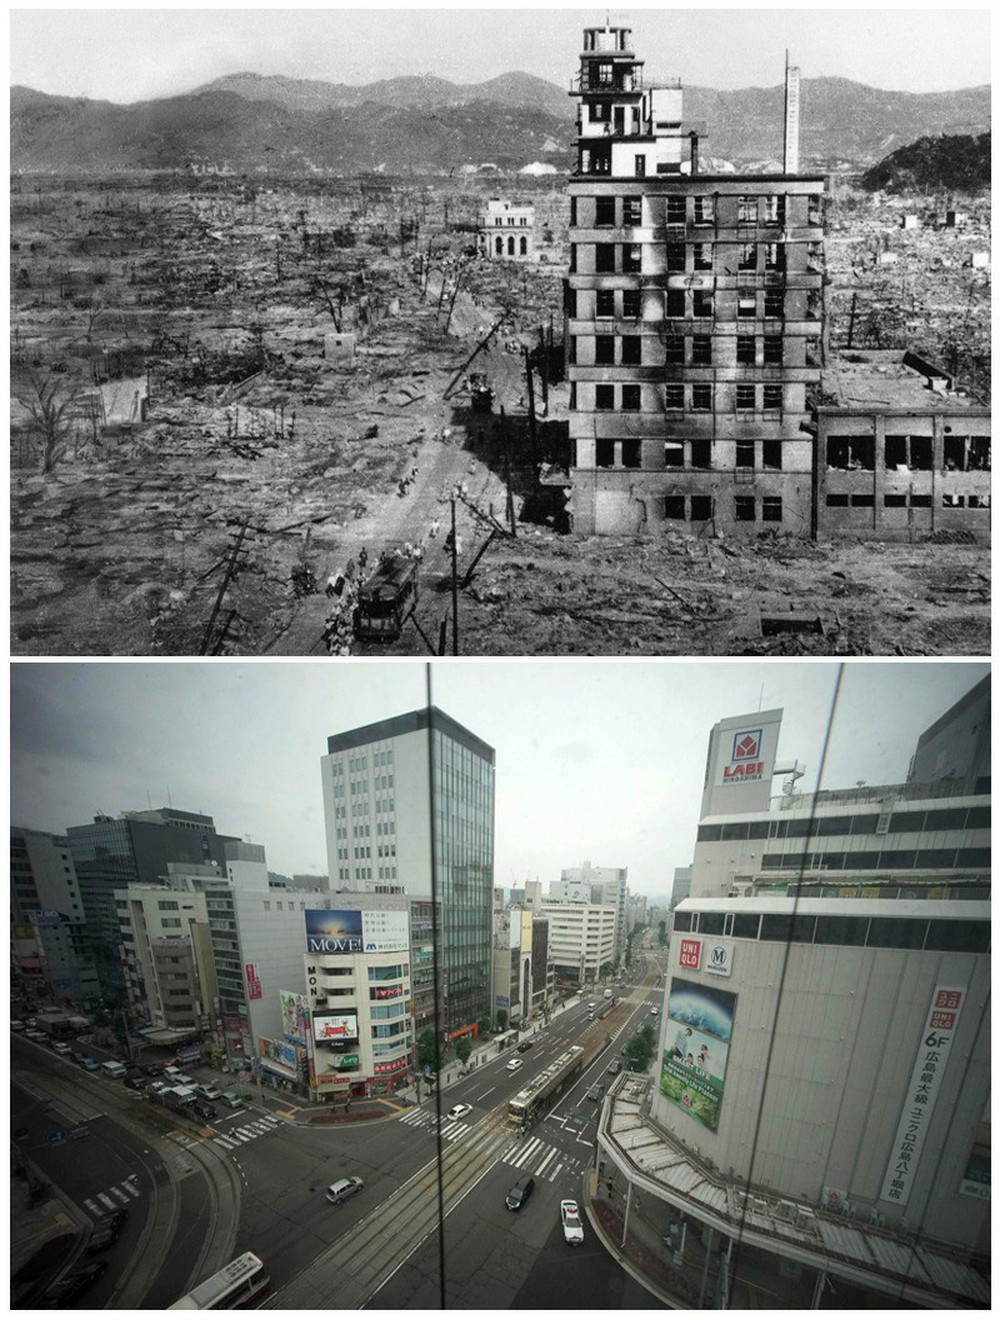 74 năm sau thảm họa bom nguyên tử: Thành phố Hiroshima và Nagasaki hồi sinh mạnh mẽ, người sống sót nhưng tâm tư mãi nằm lại ở quá khứ - Ảnh 10.